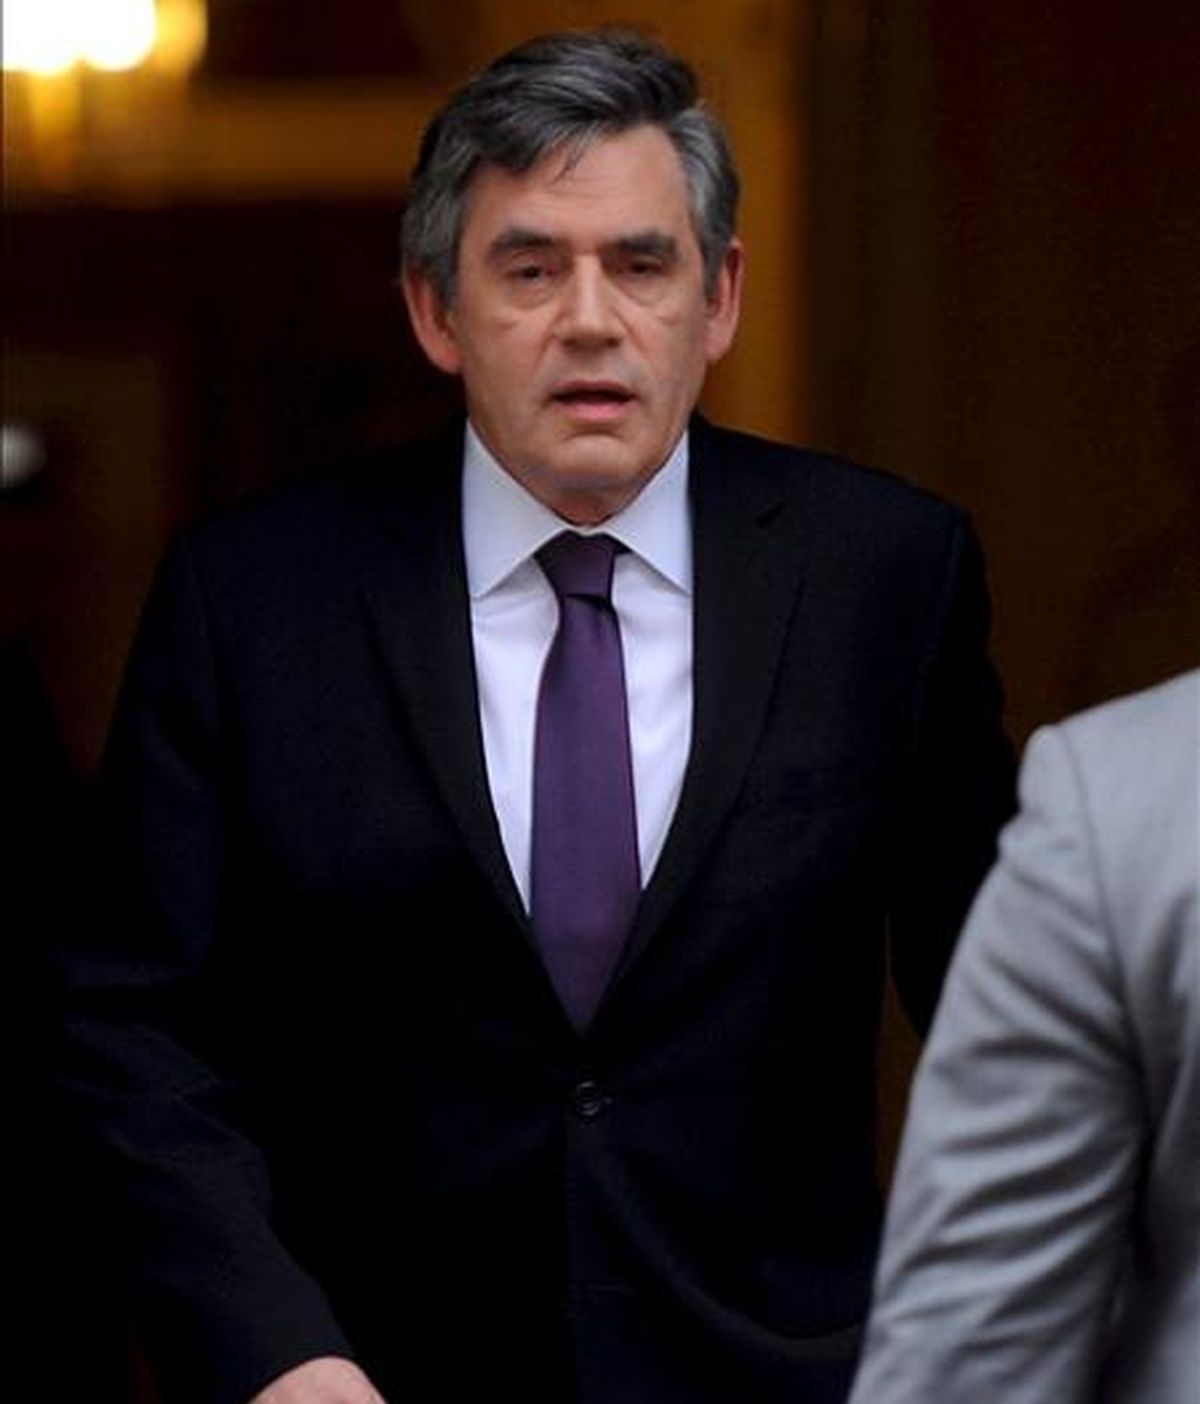 El primer ministro británico, Gordon Brown, a su salida del nº 10 de Downing Street, en Londres, R. Unido, ayer 8 de junio. EFE